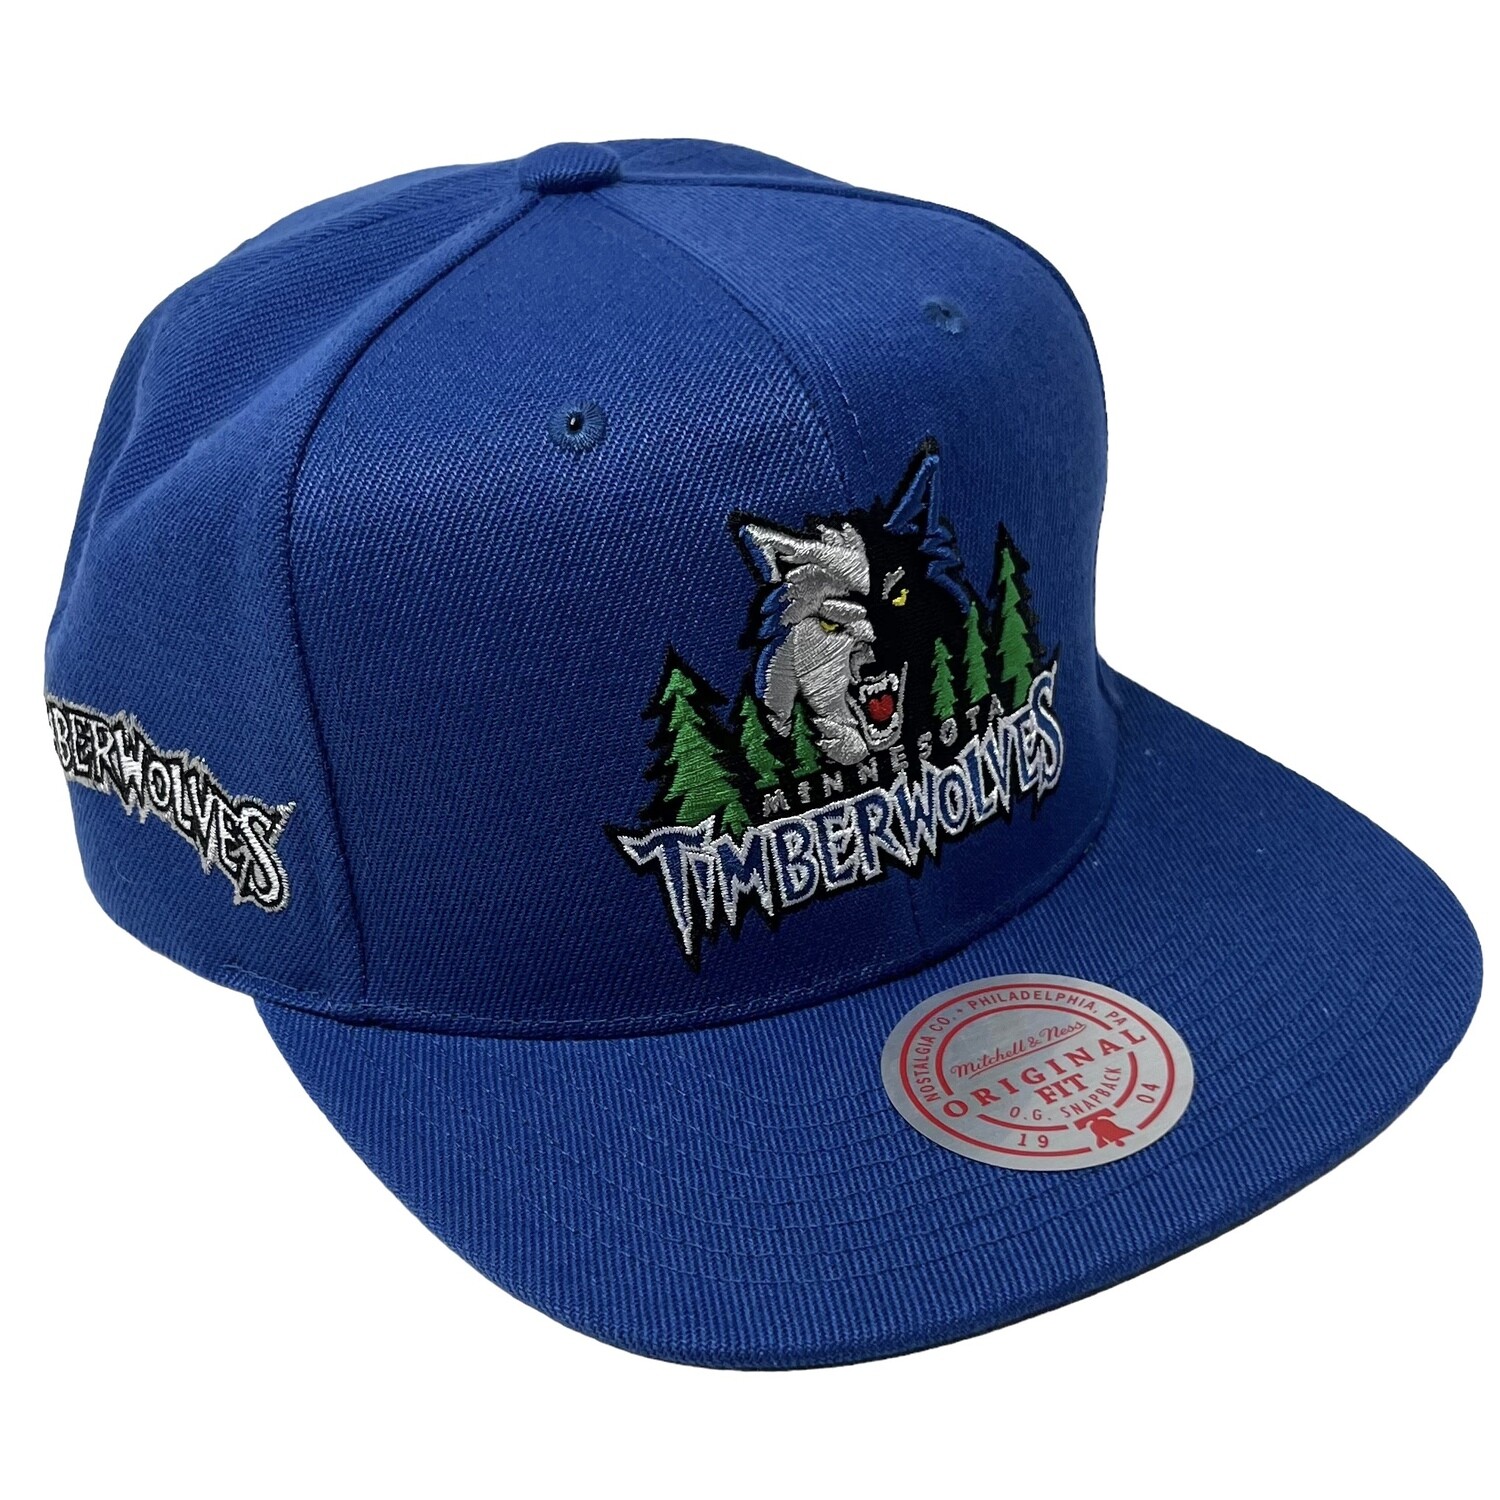 mn timberwolves hat